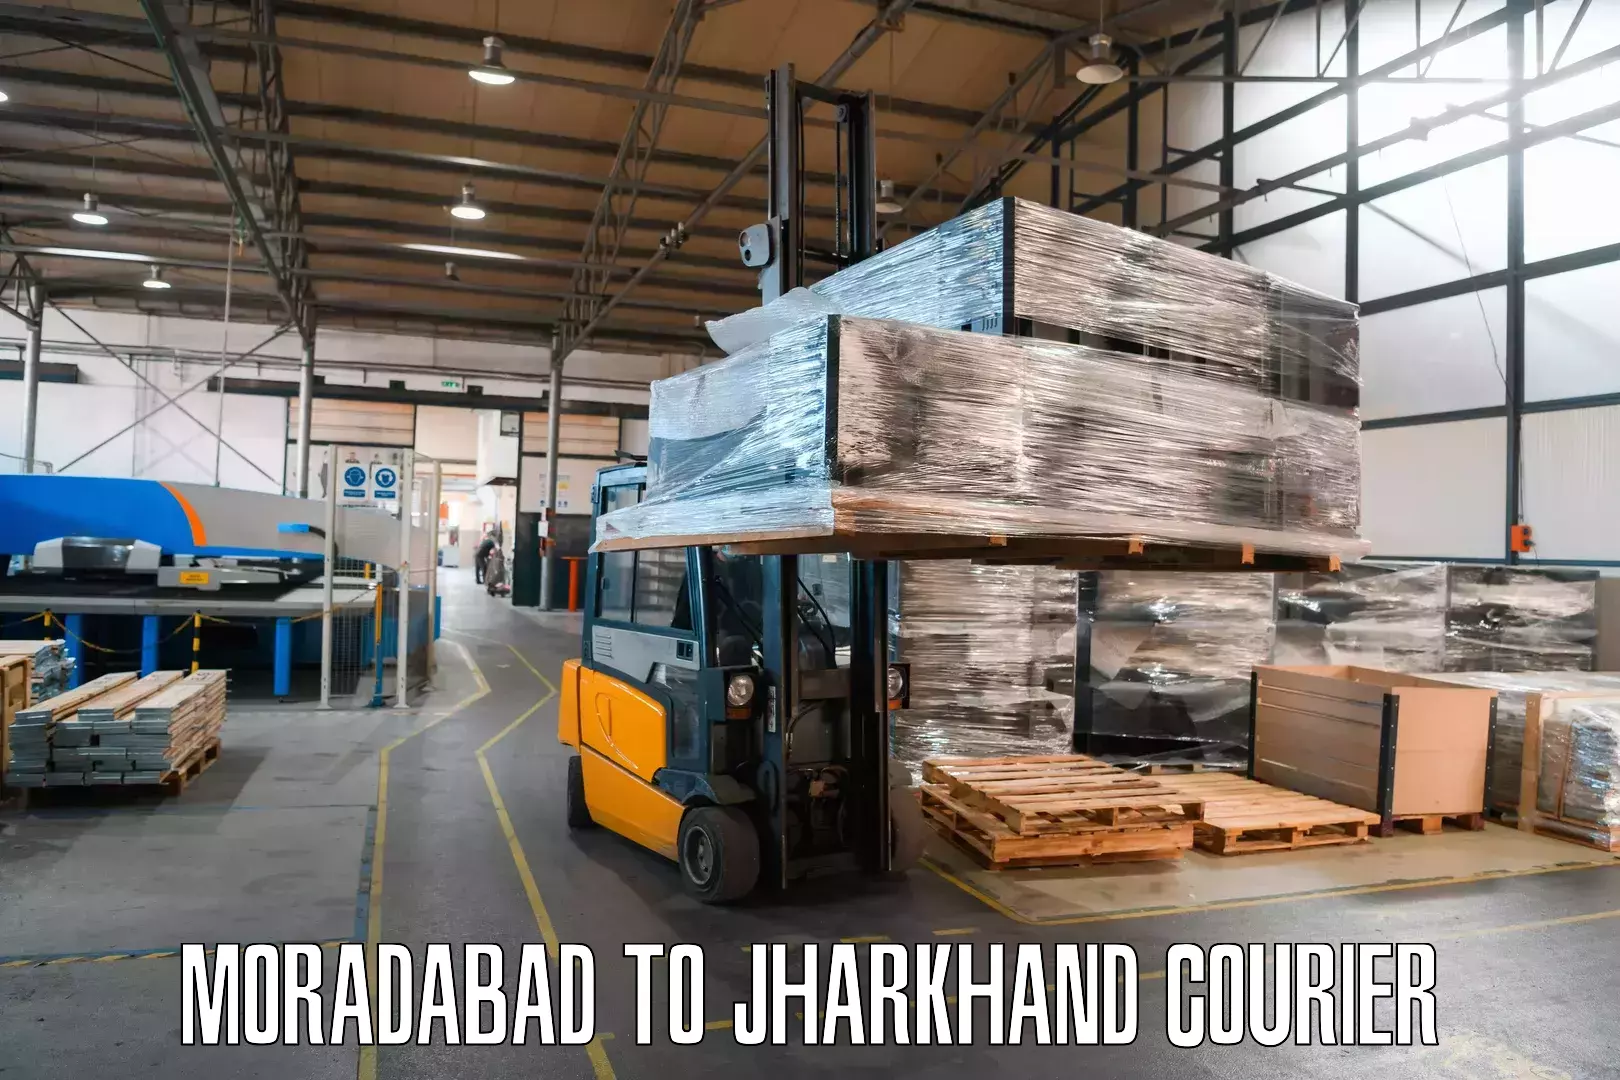 Digital shipping tools Moradabad to IIIT Ranchi